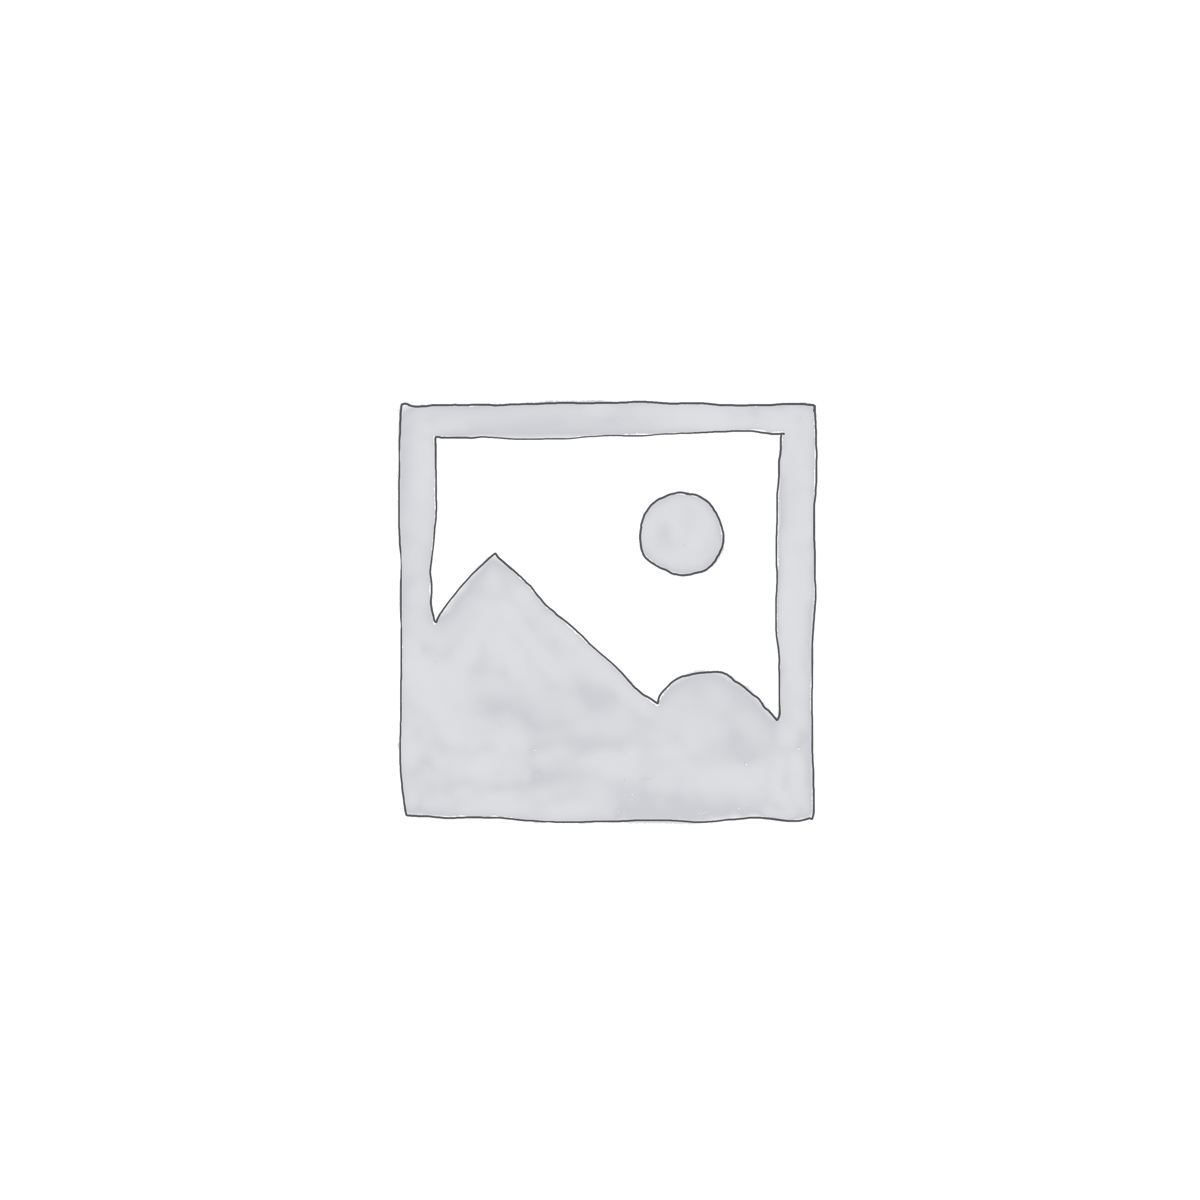 Kaldewei Príslušenstvo - Bako bočný panel s krycou lištou, 700/670 x 512 mm, biely 685500210001